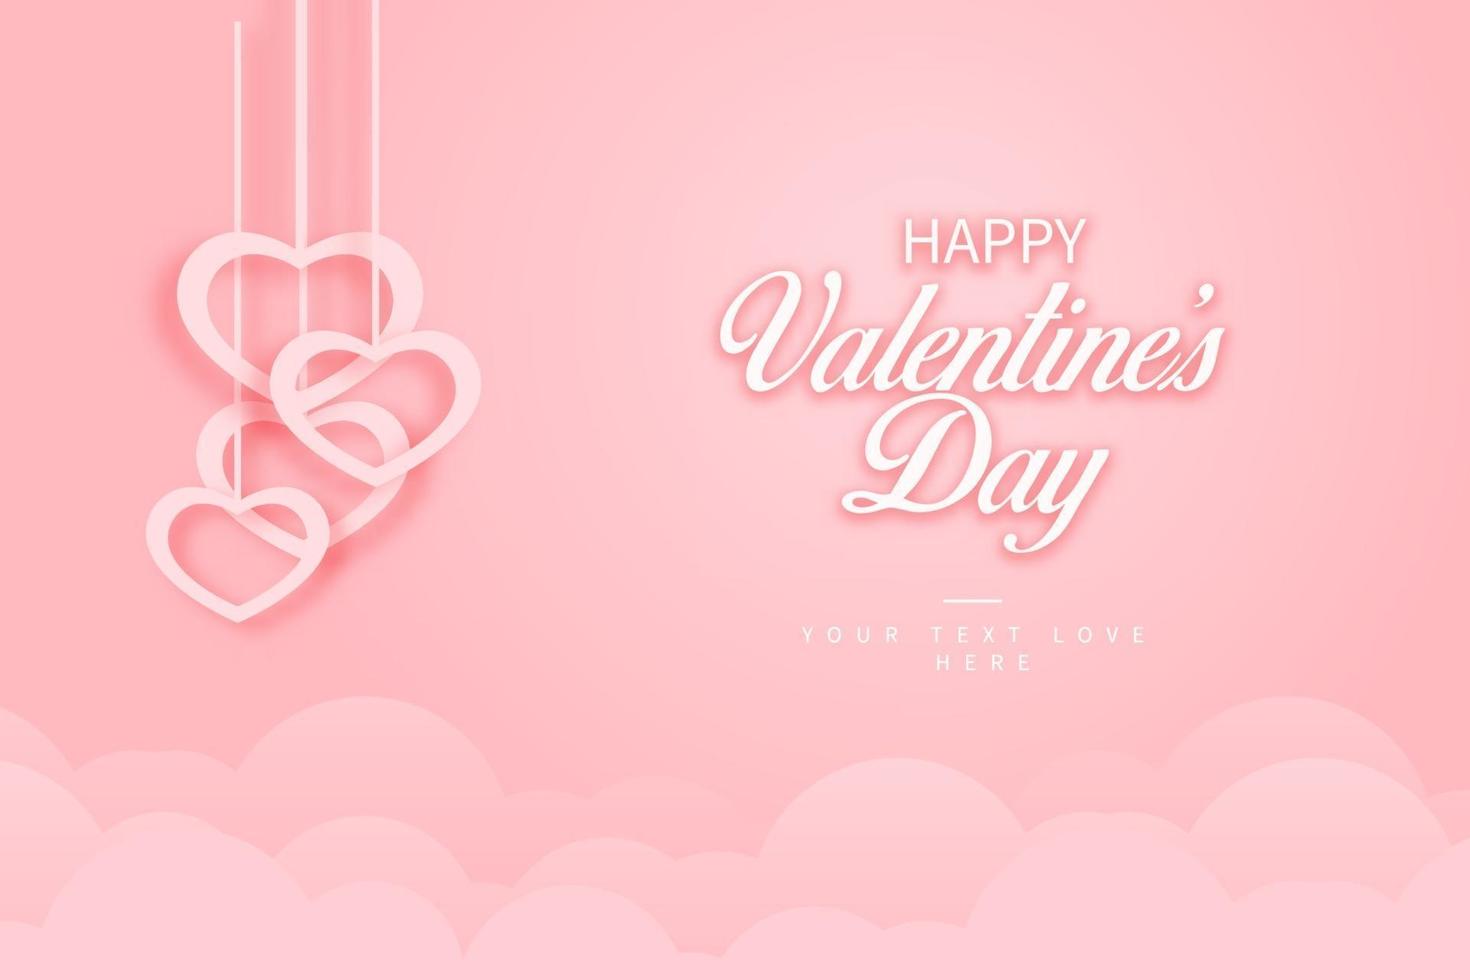 Fondo realista del día de San Valentín feliz, postal de cita romántica, tarjeta, invitación, diseño de plantilla de banner vector